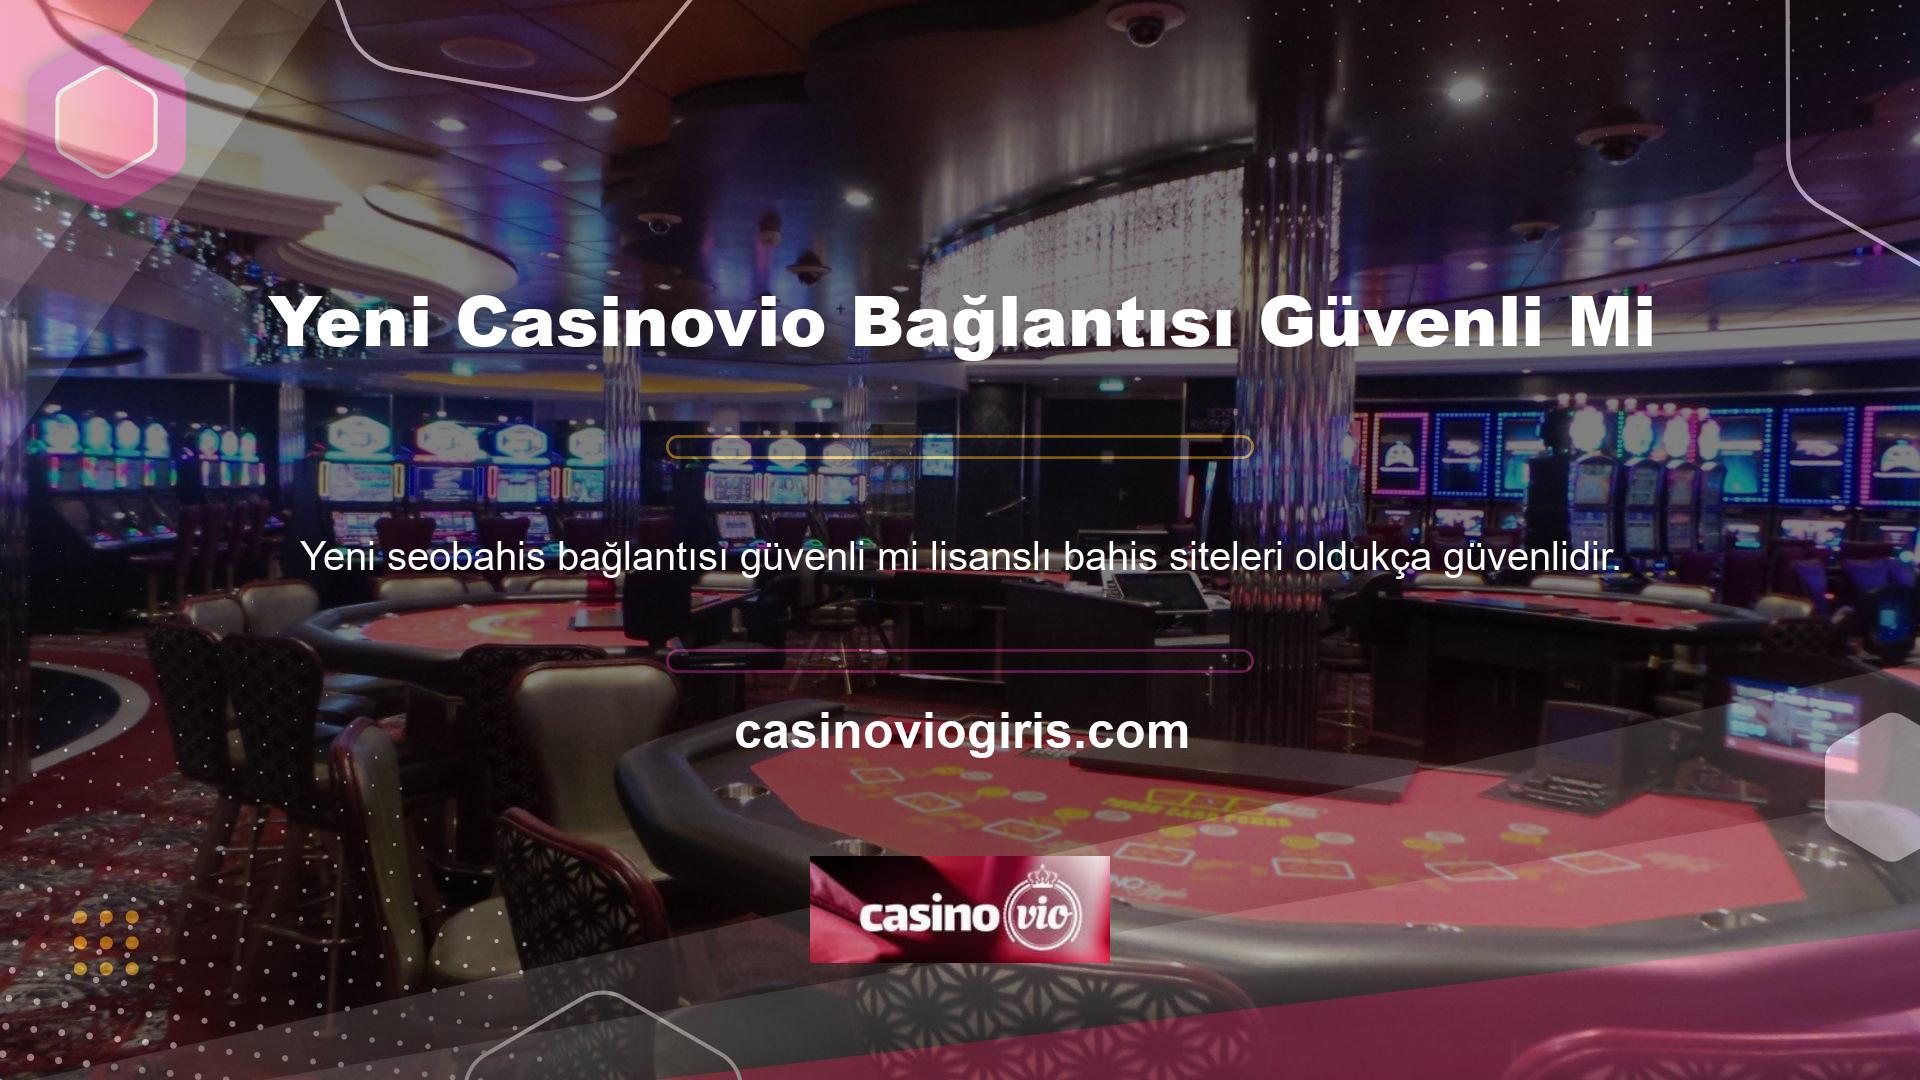 Ancak ülkemizin casino kurallarına göre lisanslı üçüncü şahıs olarak tanımlanan casino sitelerinde oynayamazsınız